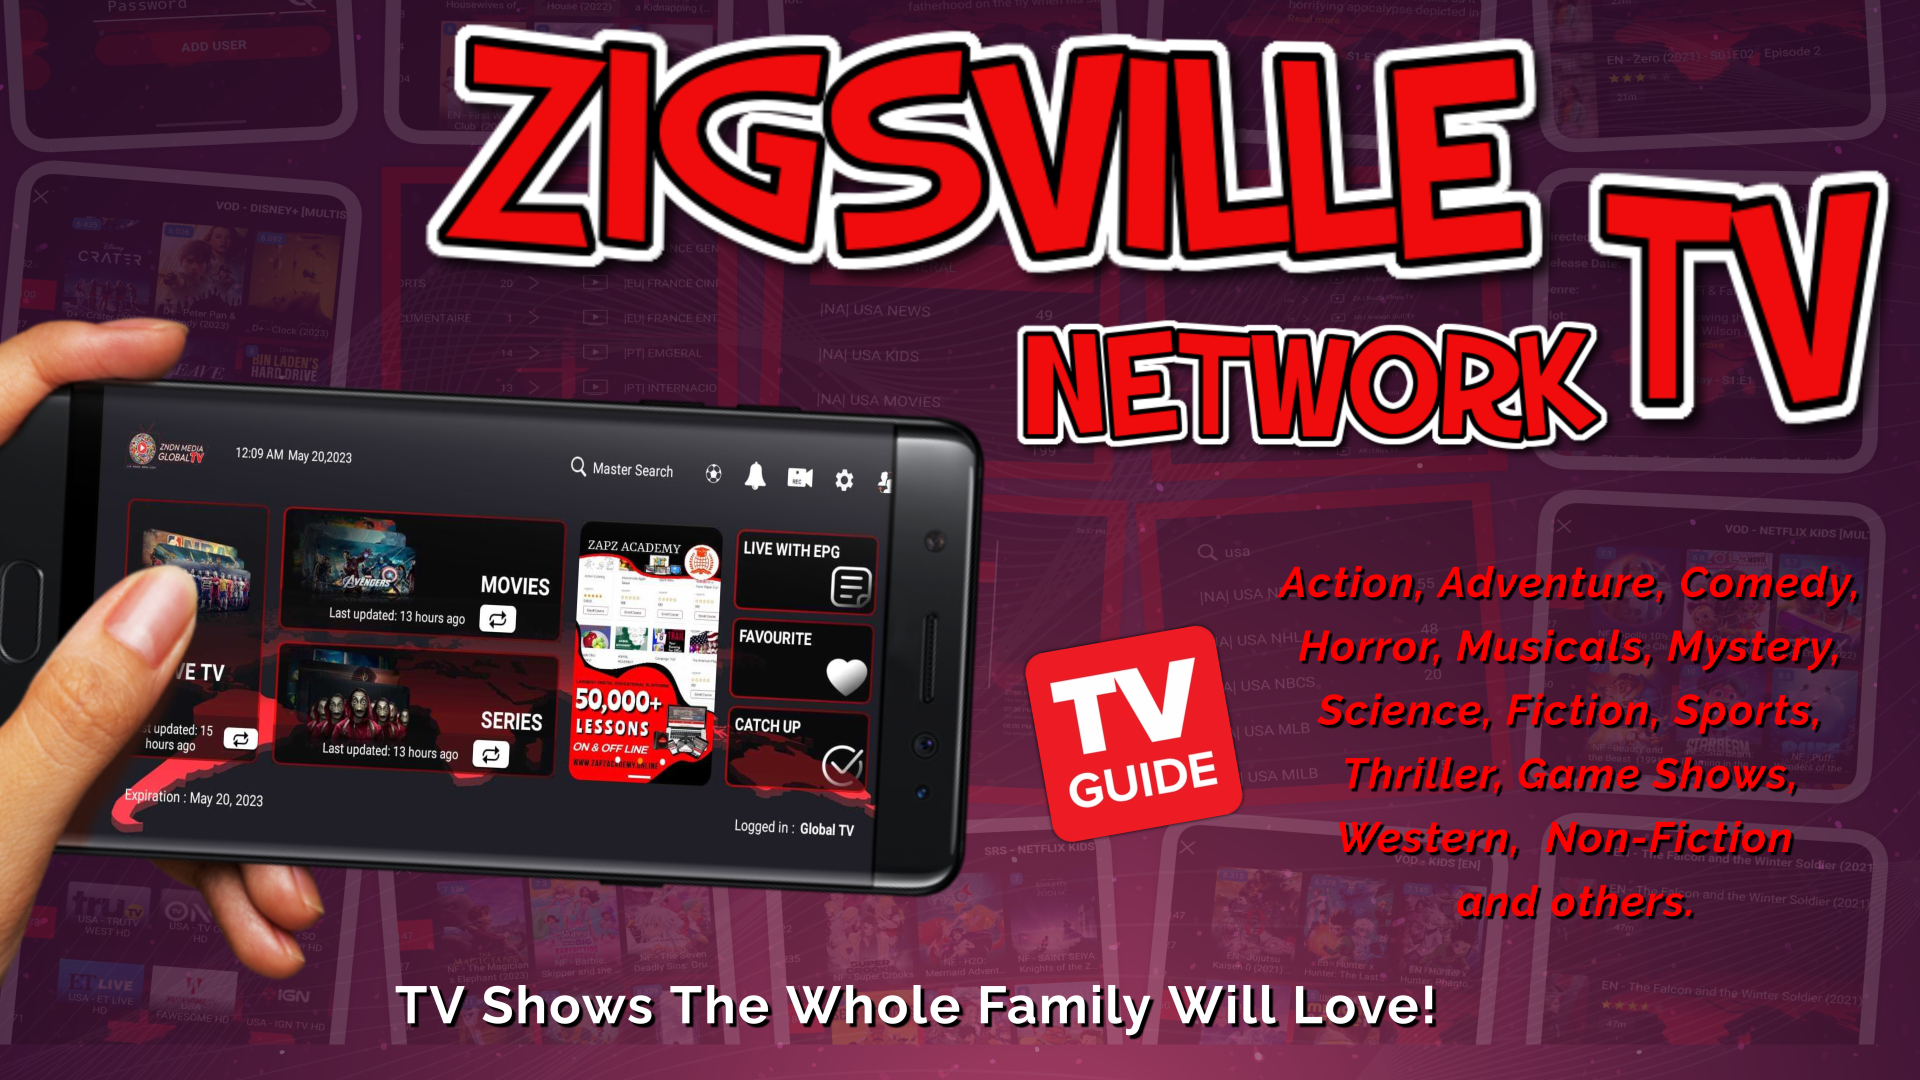 zigsville network tv